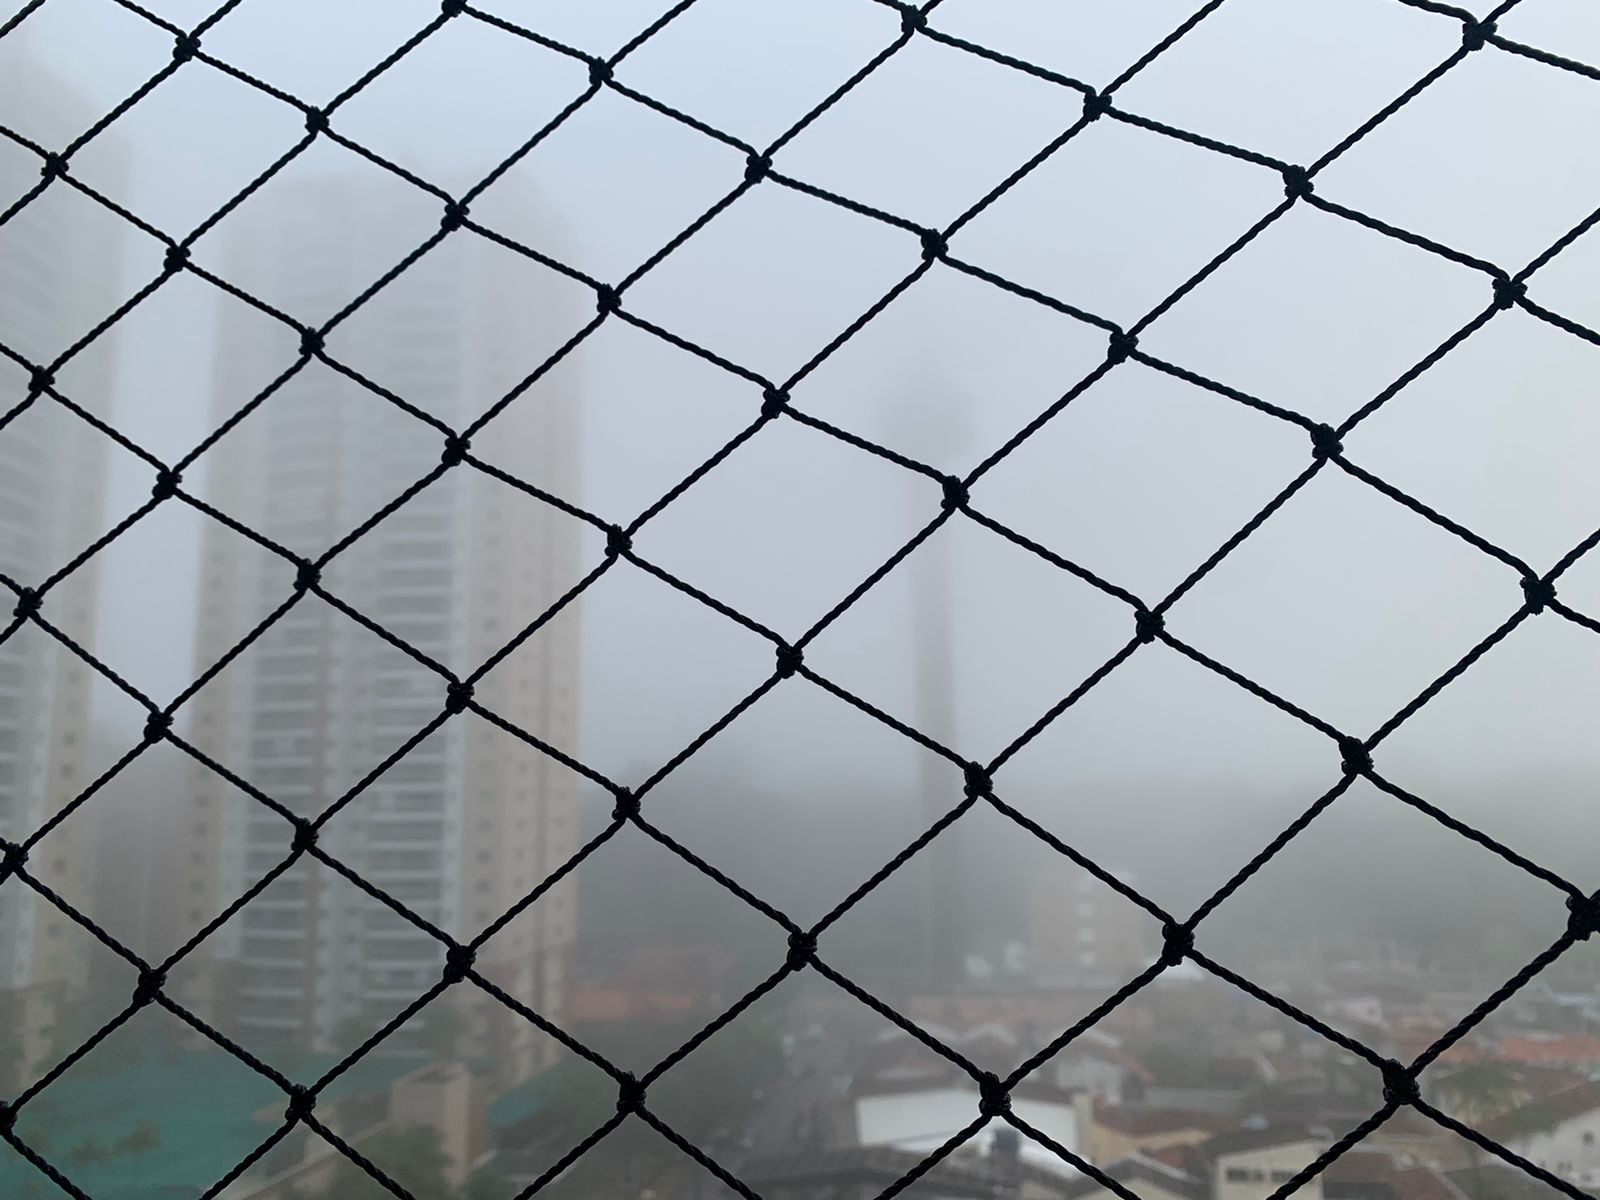 Visibilidade da cidade bem baixa devido à neblina desta manhã.